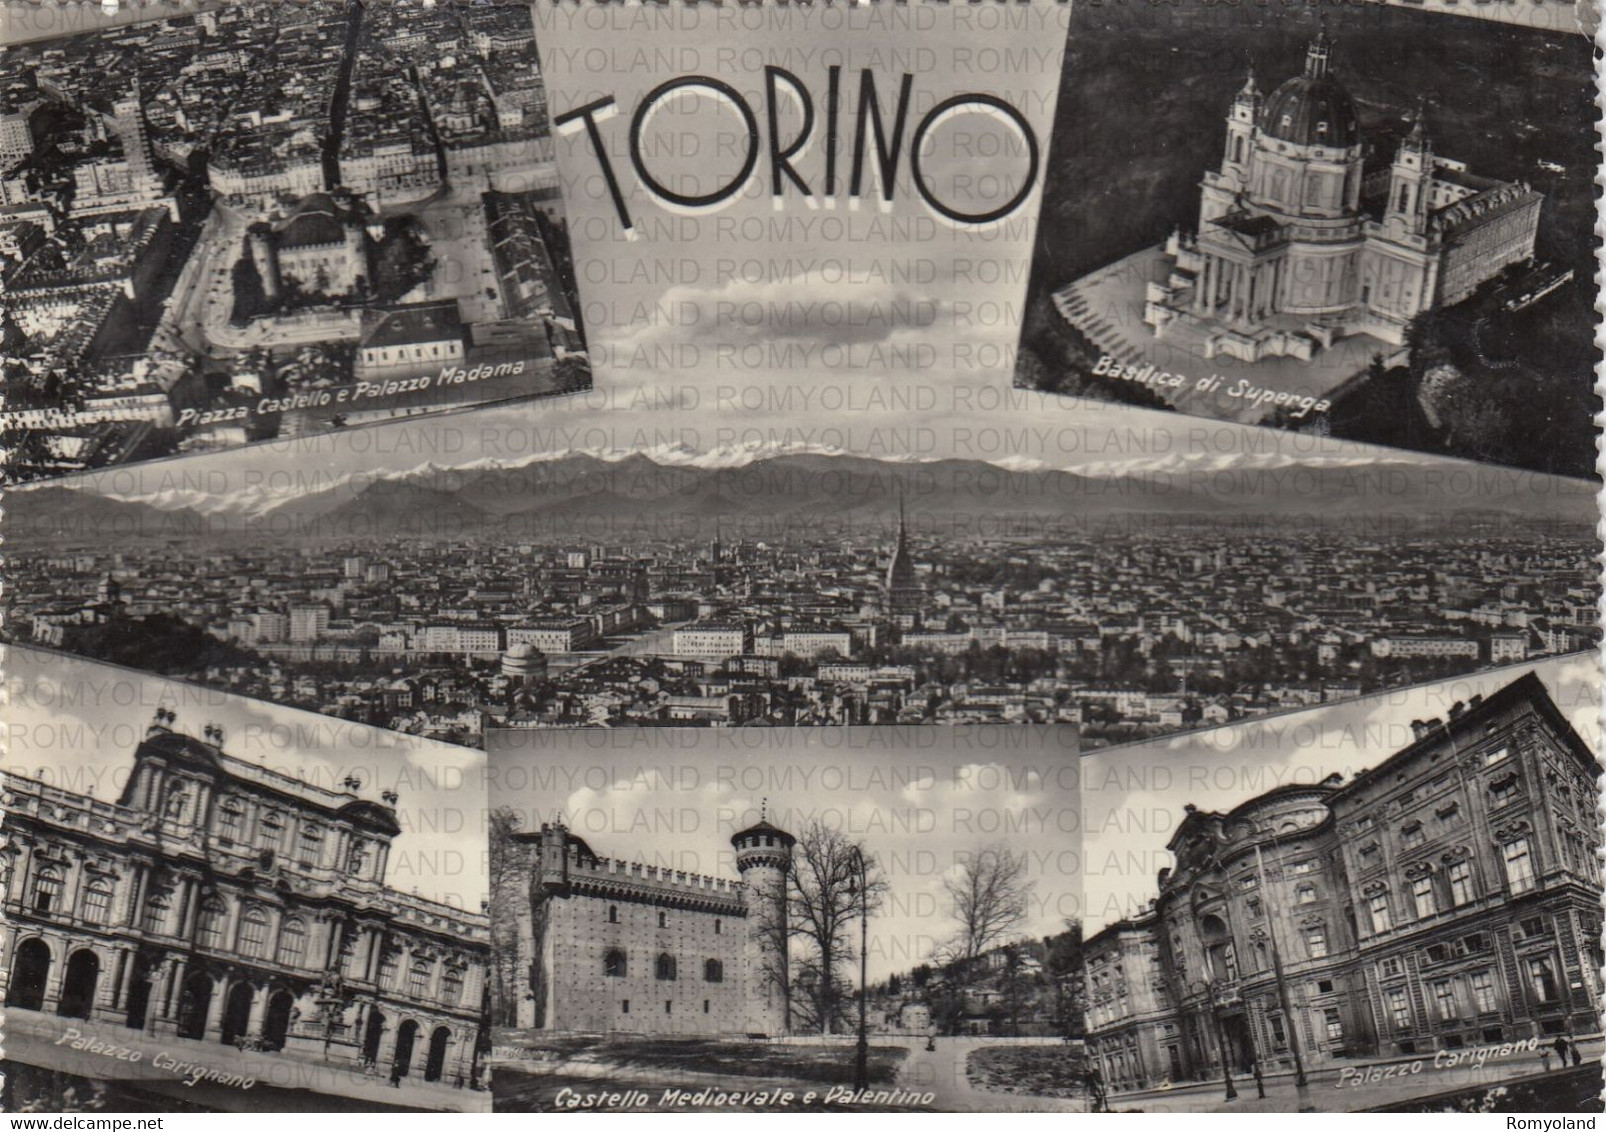 CARTOLINA  TORINO,PIEMONTE,PIAZZA CASTELLO E PALAZZO MADONNA-BASILICA DI SUPERGA-CASTELLO MEDIOEVALE-VIAGGIATA 1956 - Castello Del Valentino